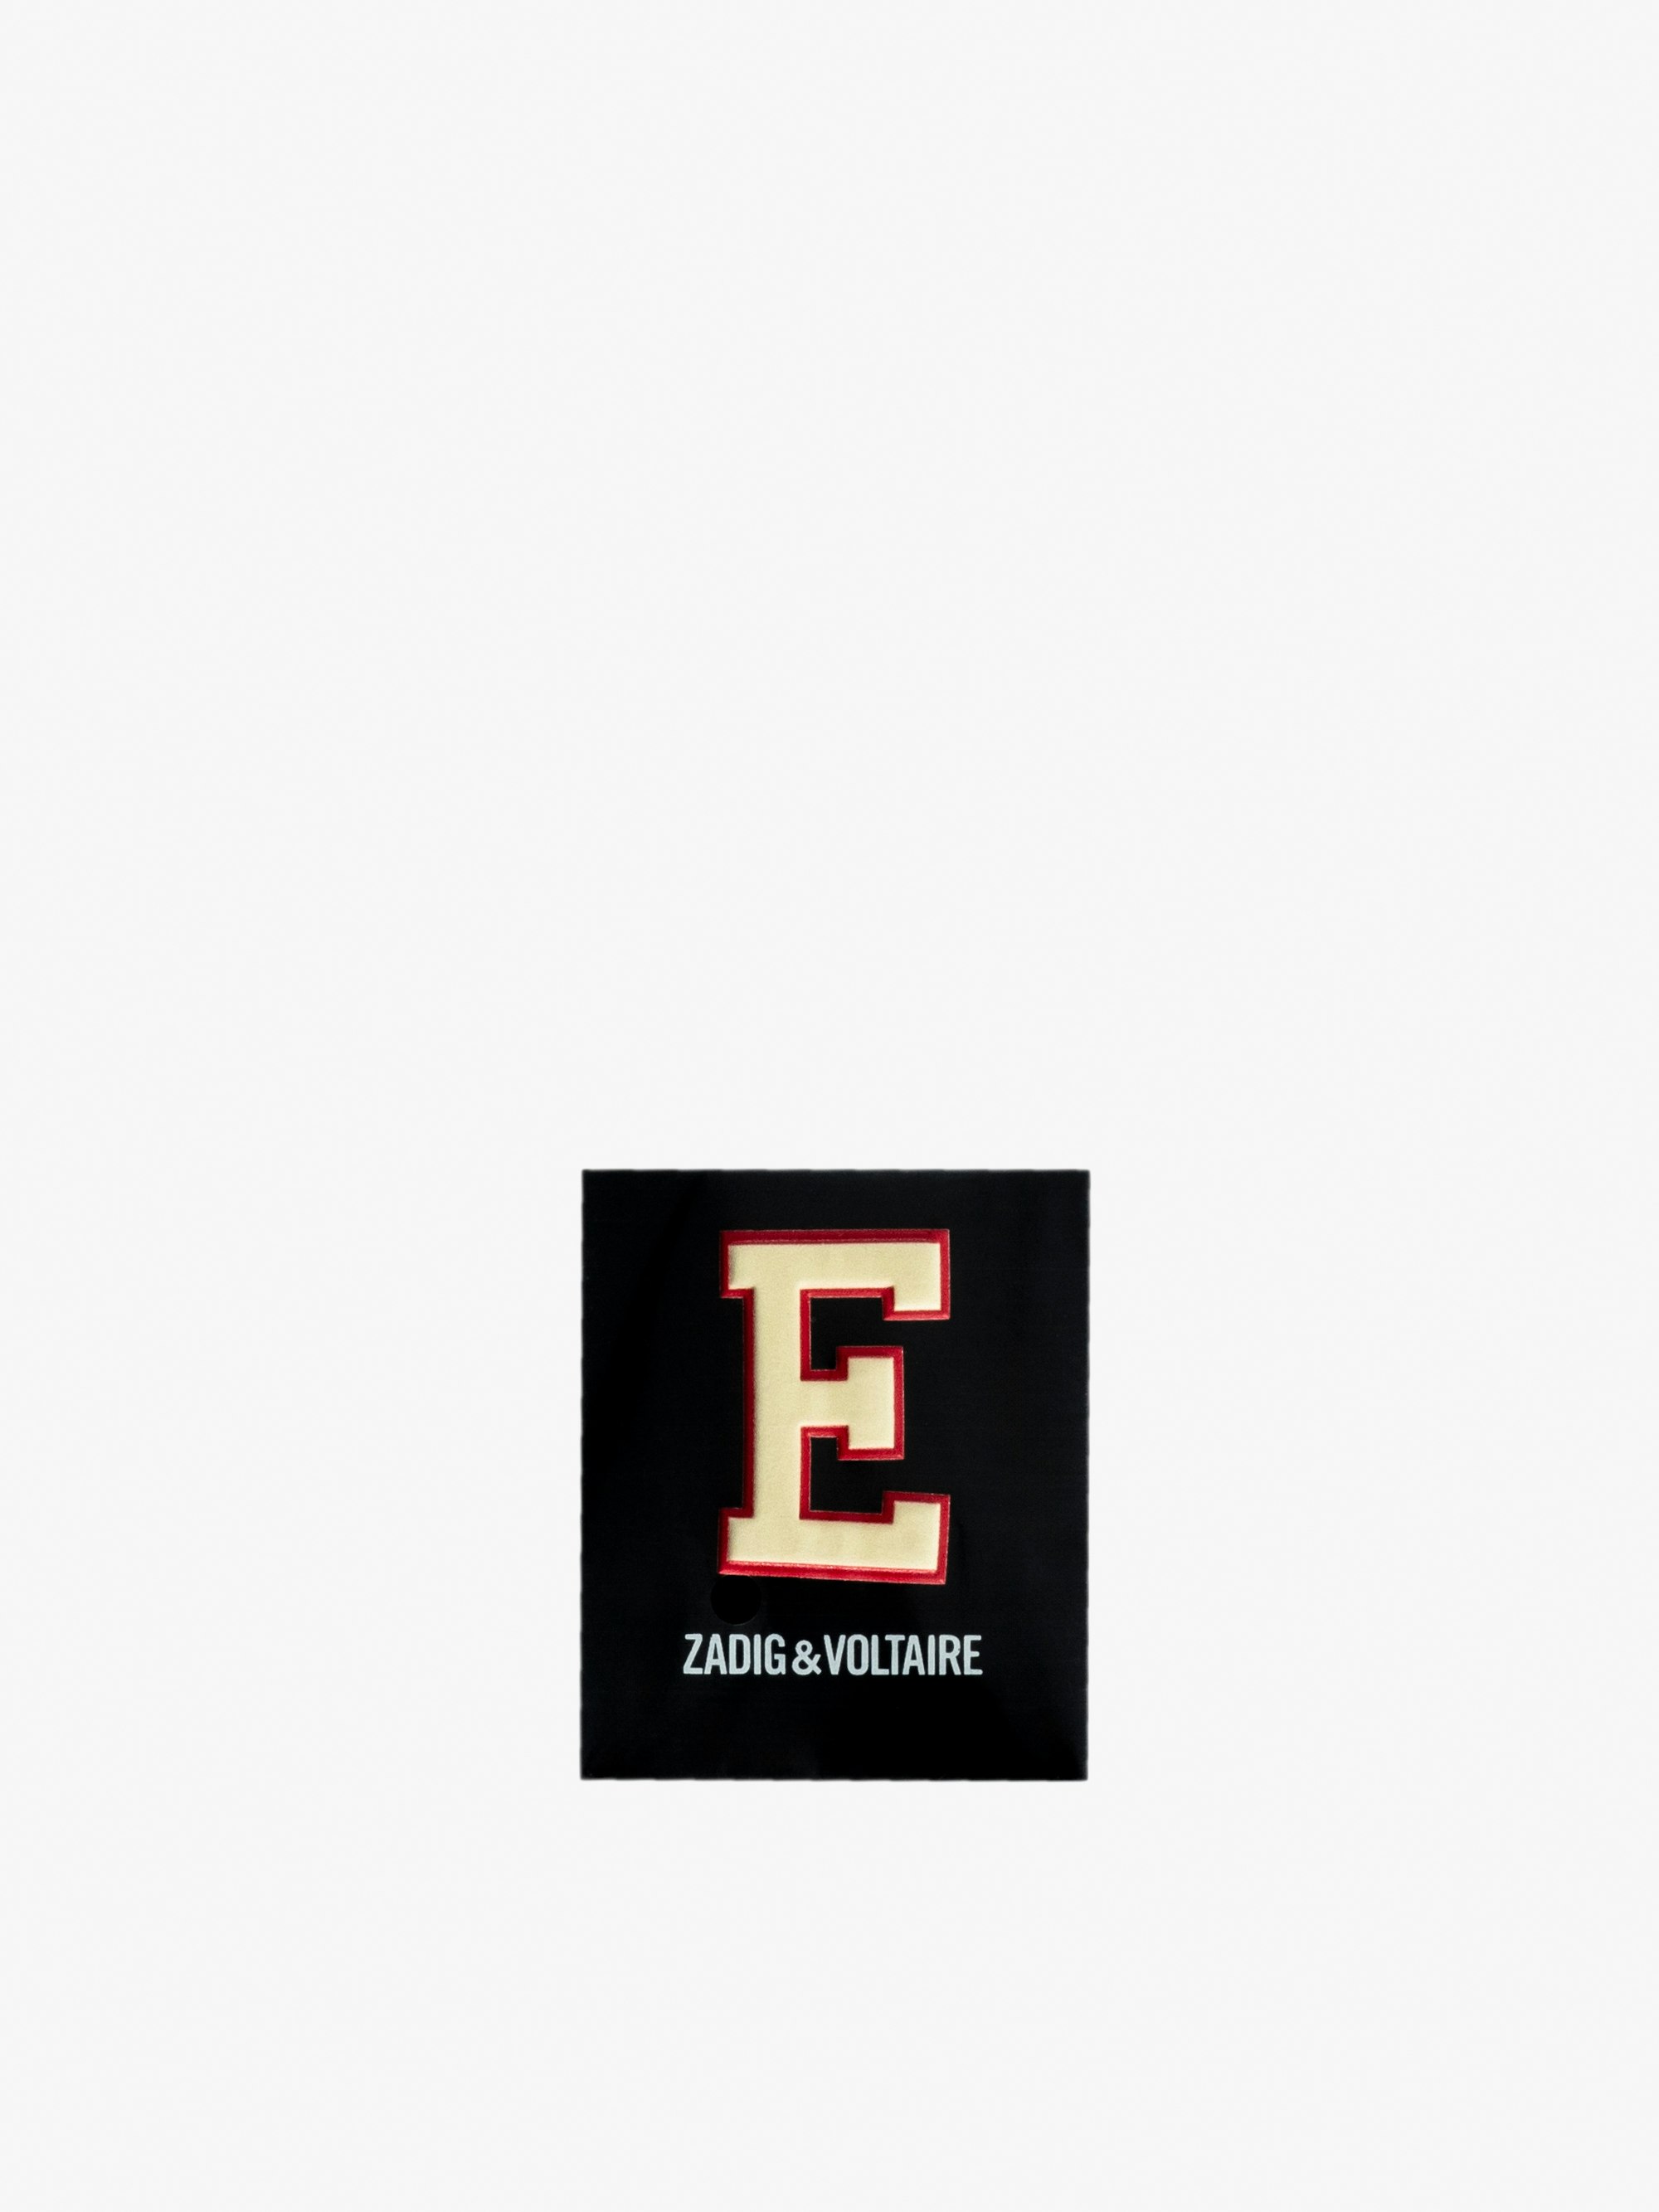 Initial E Sticker - Multicolored initial E sticker.